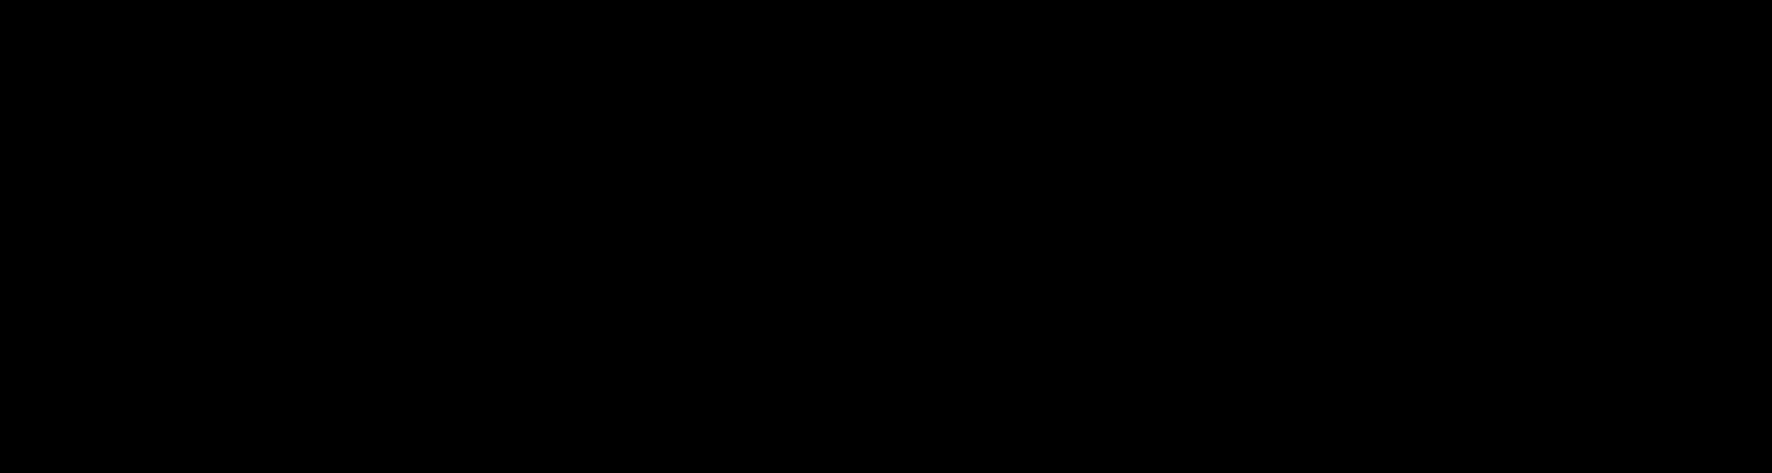 InfinityWorks logo in black